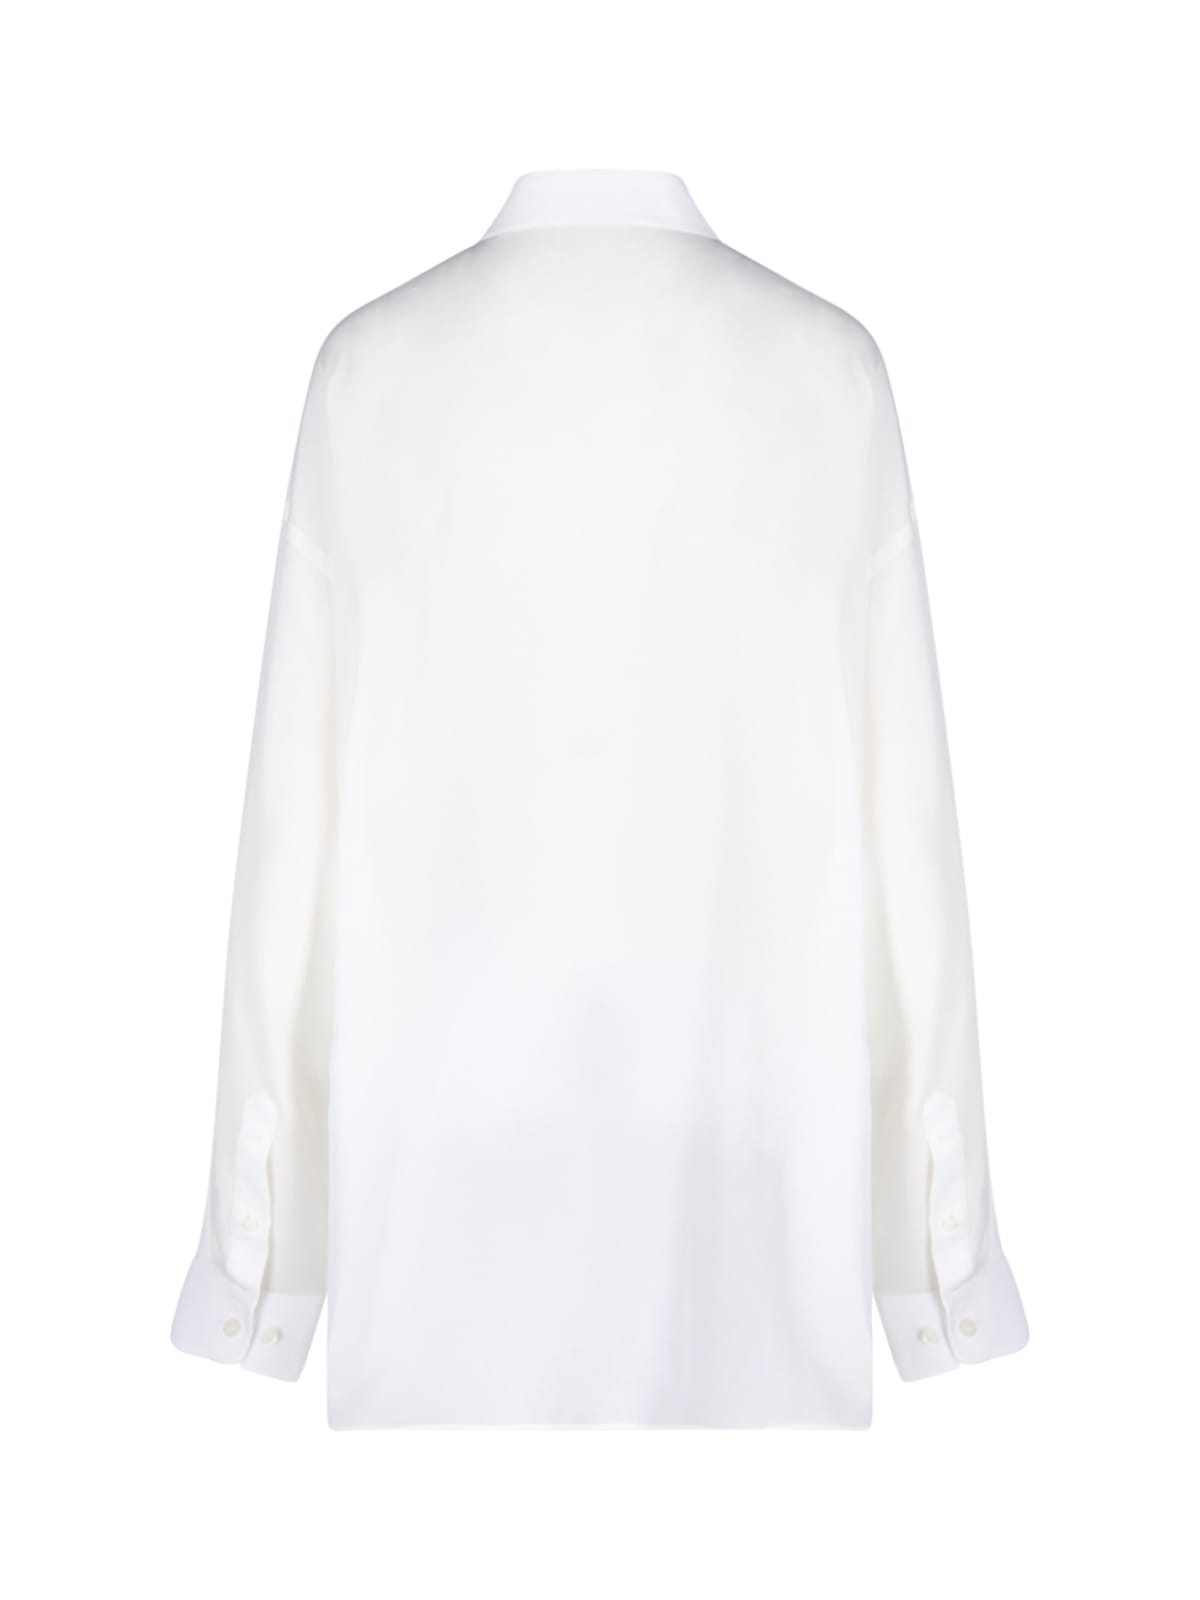 Balenciaga BB-monogram button-up Shirt - Farfetch